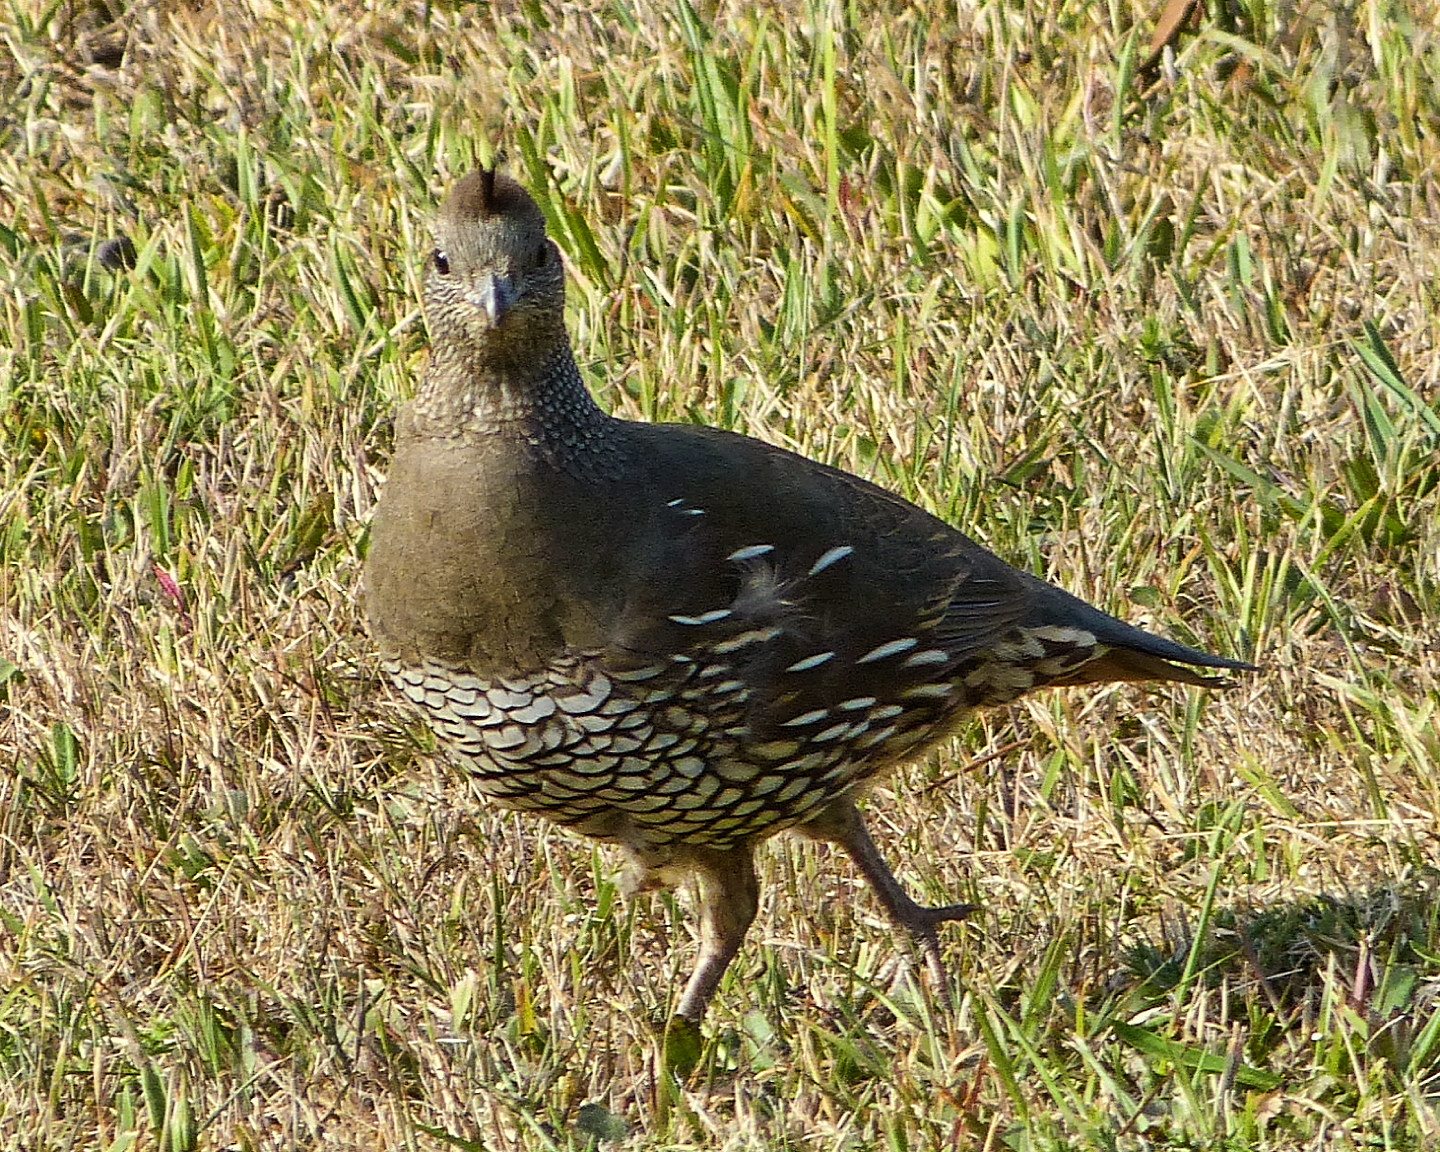 a bird that is walking through the grass